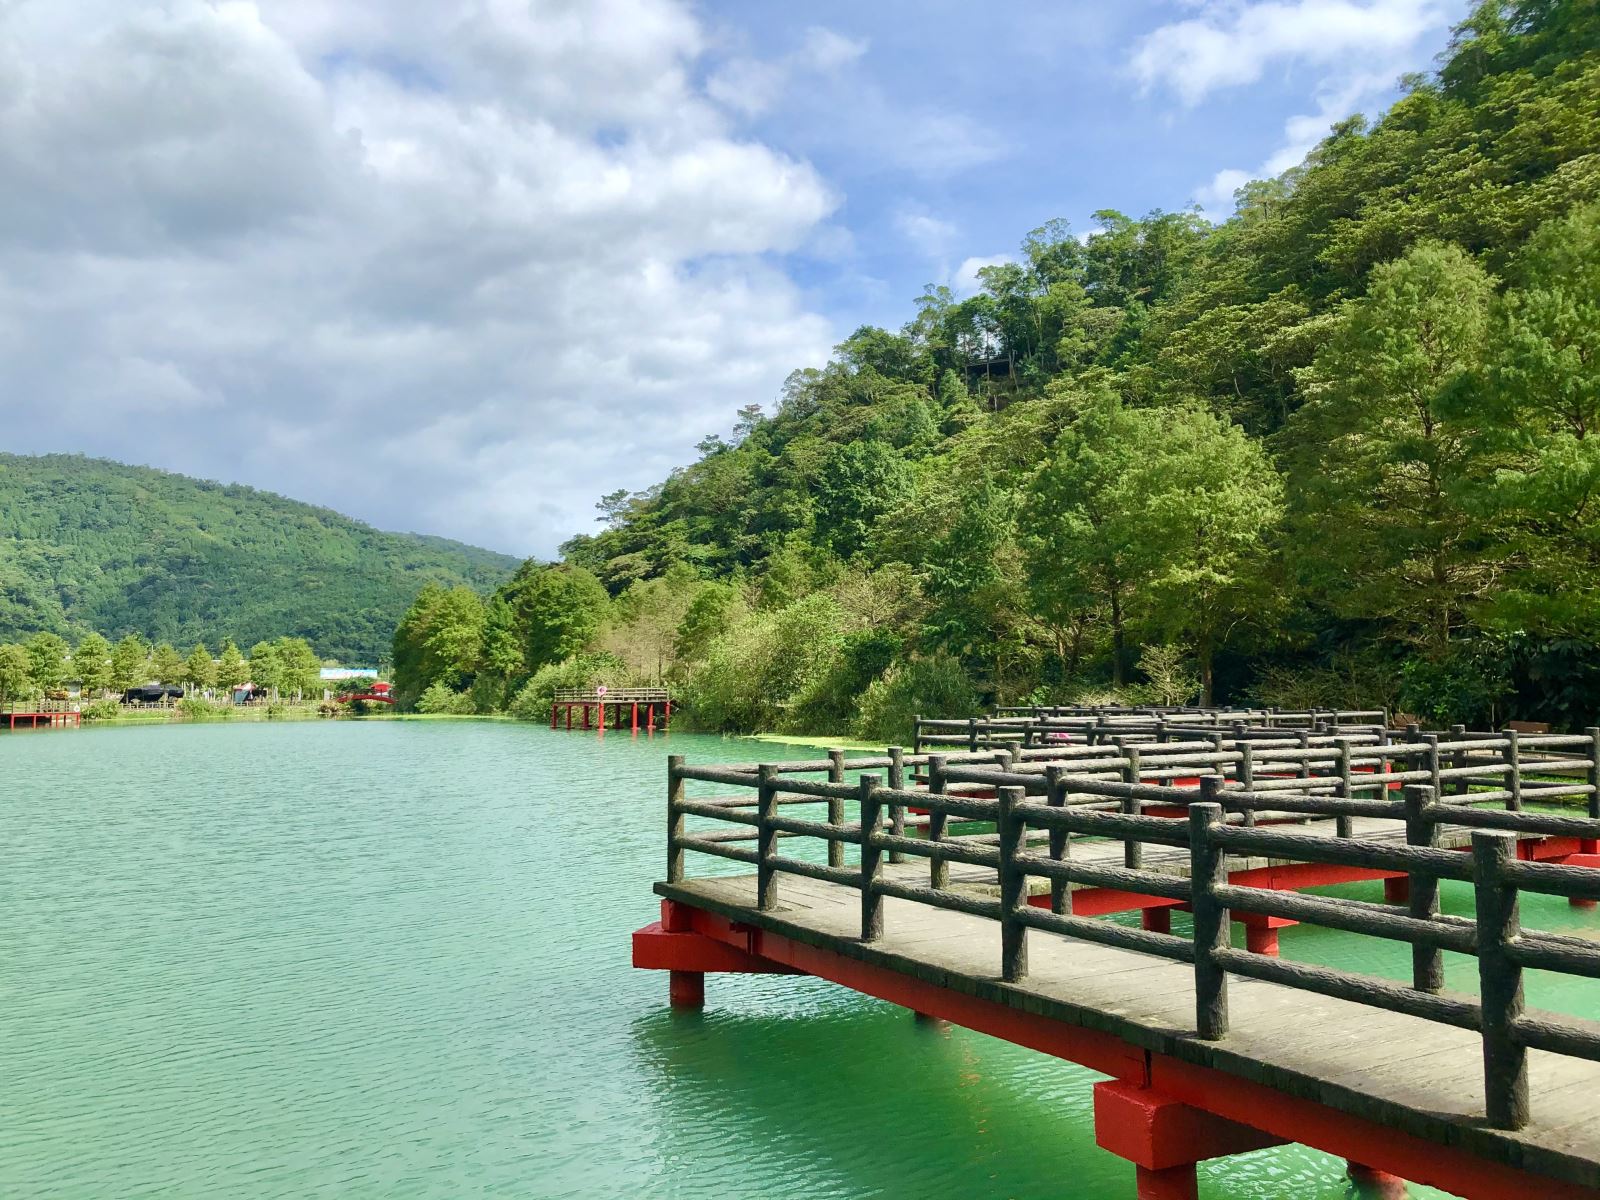 สะพาน Jiuqu ที่ "Wanglongpi" สถานที่ศักดิ์สิทธิ์สำหรับการเพลิดเพลินกับแหนบทำให้นักท่องเที่ยวสามารถเดินลงไปในทะเลสาบได้